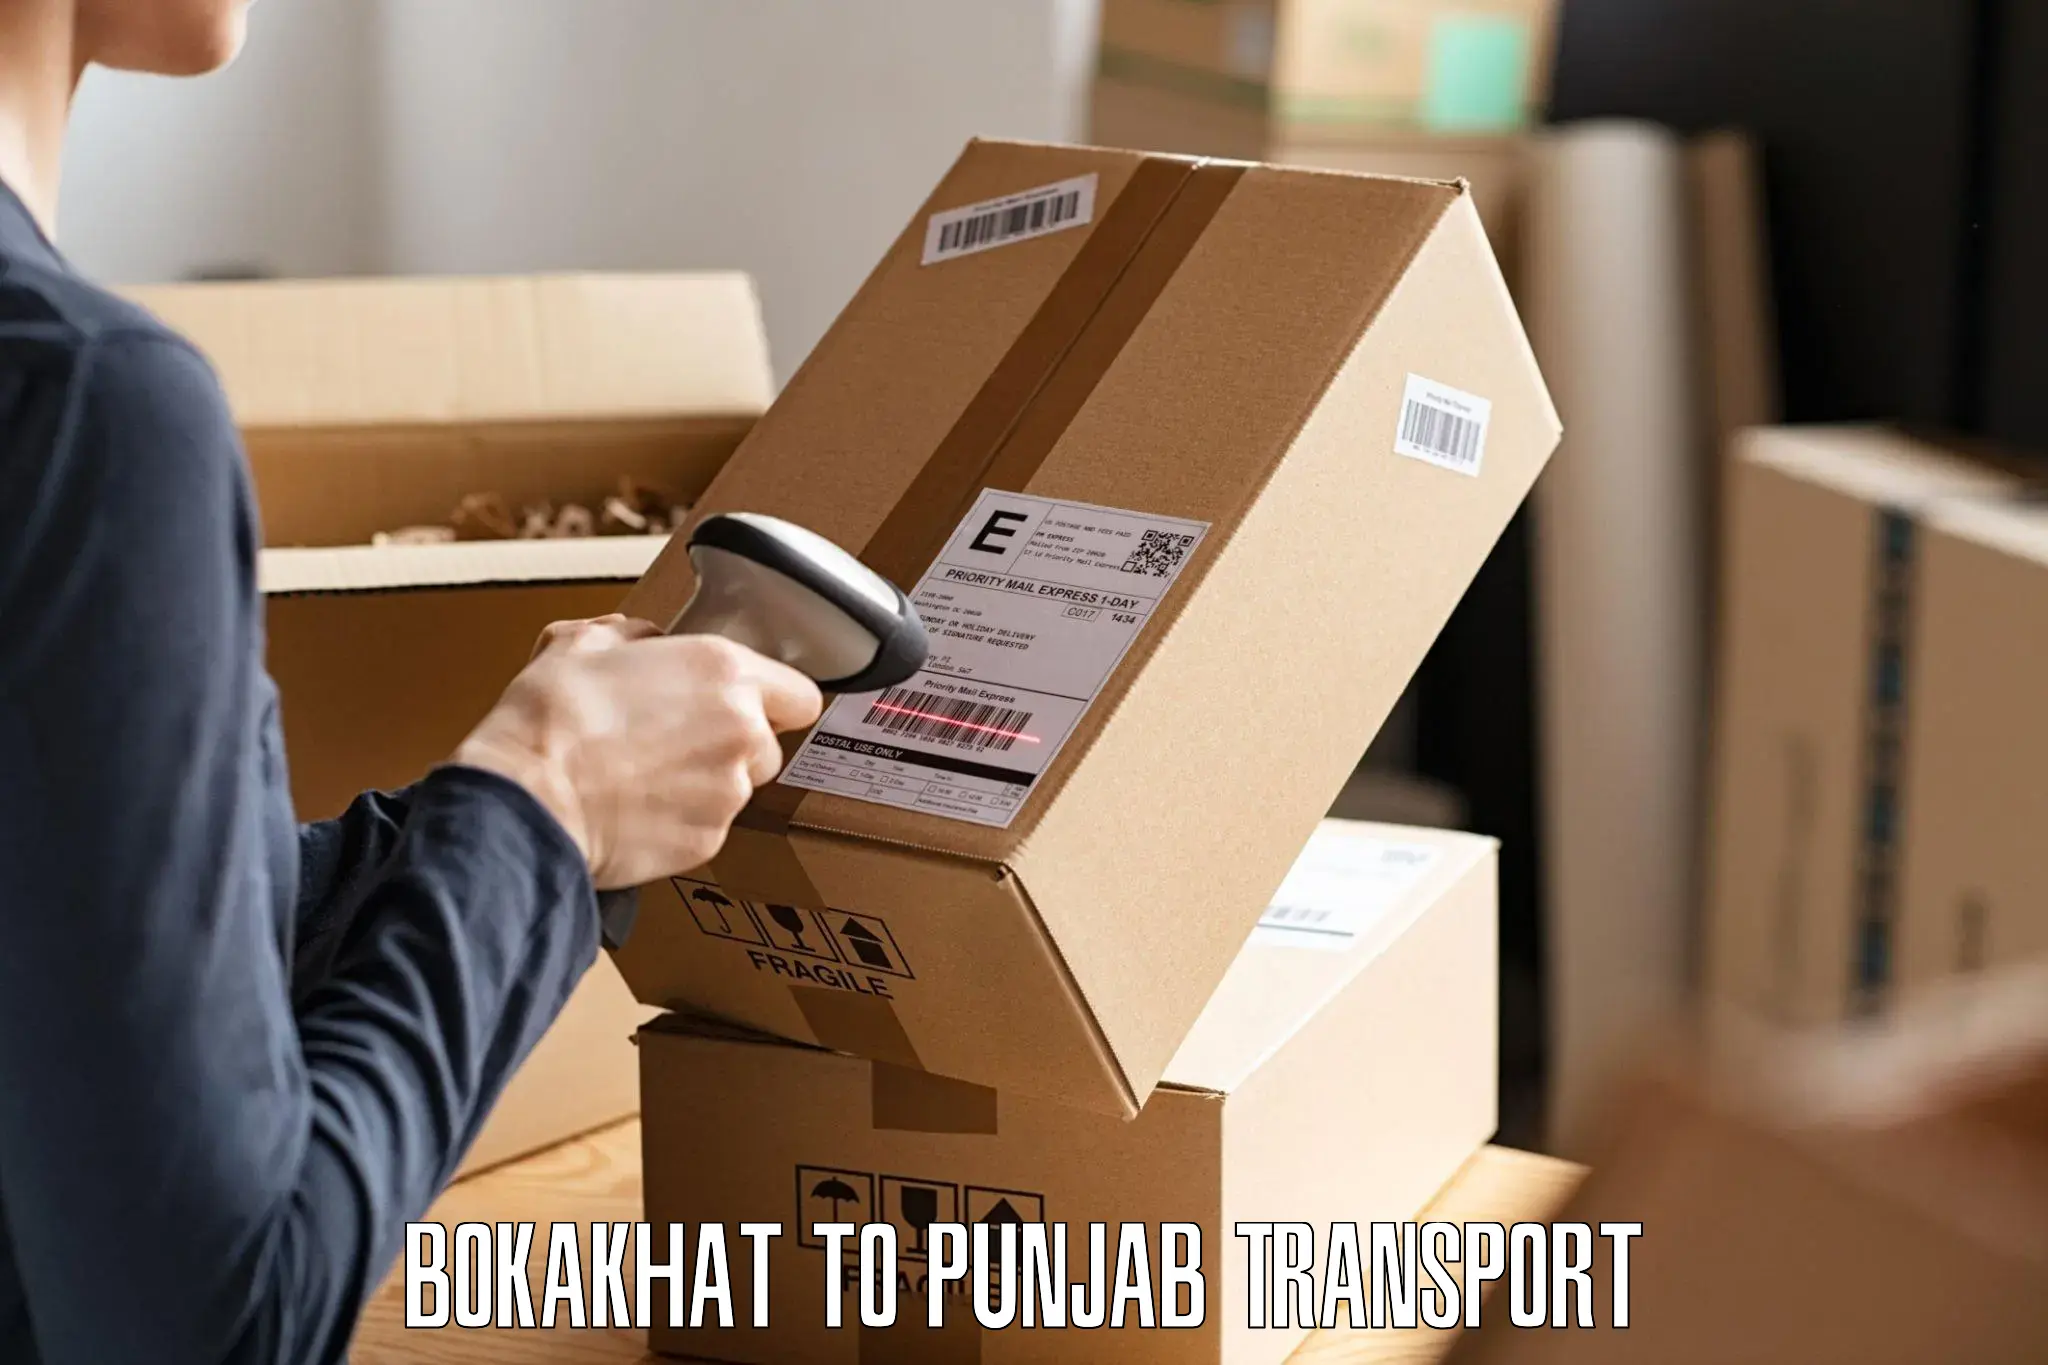 India truck logistics services Bokakhat to Amritsar